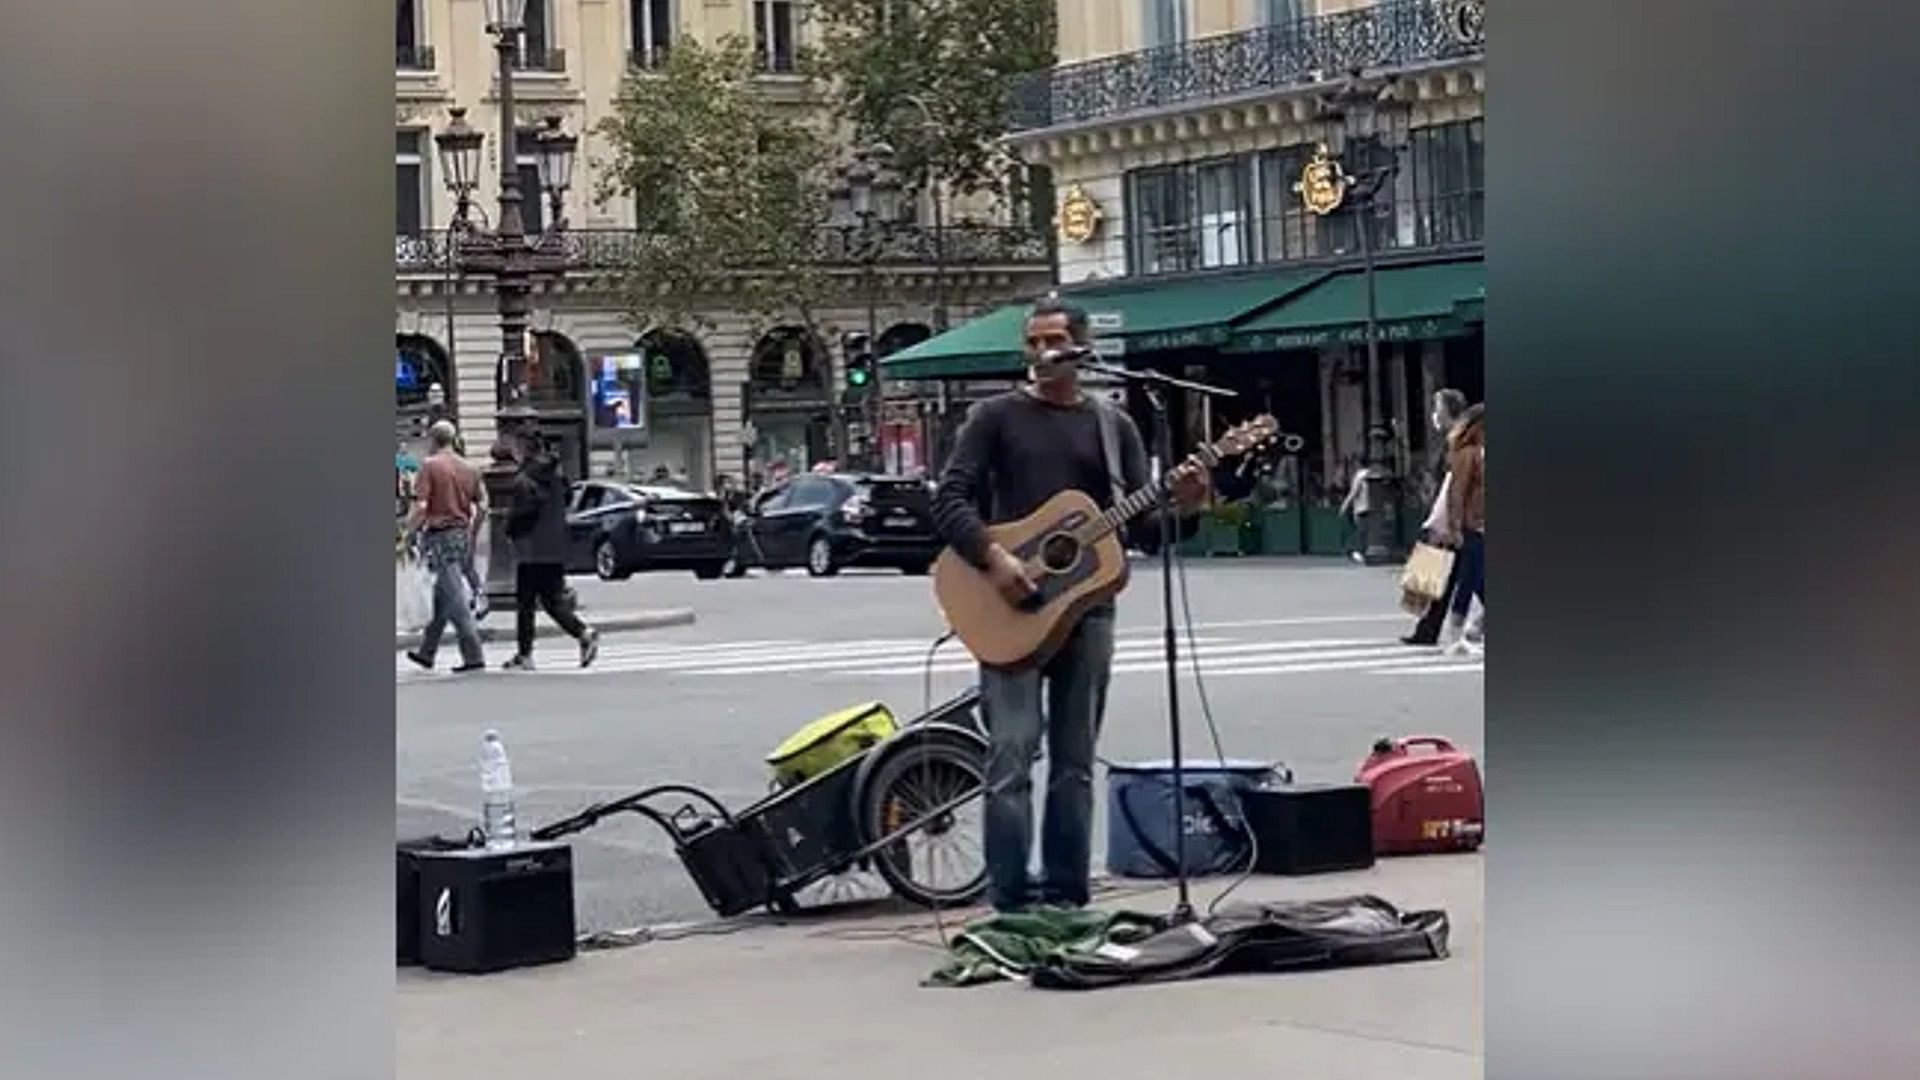 Foreigner man singing ajeeb dastan hai yeh song for pak woman in paris video goes viral